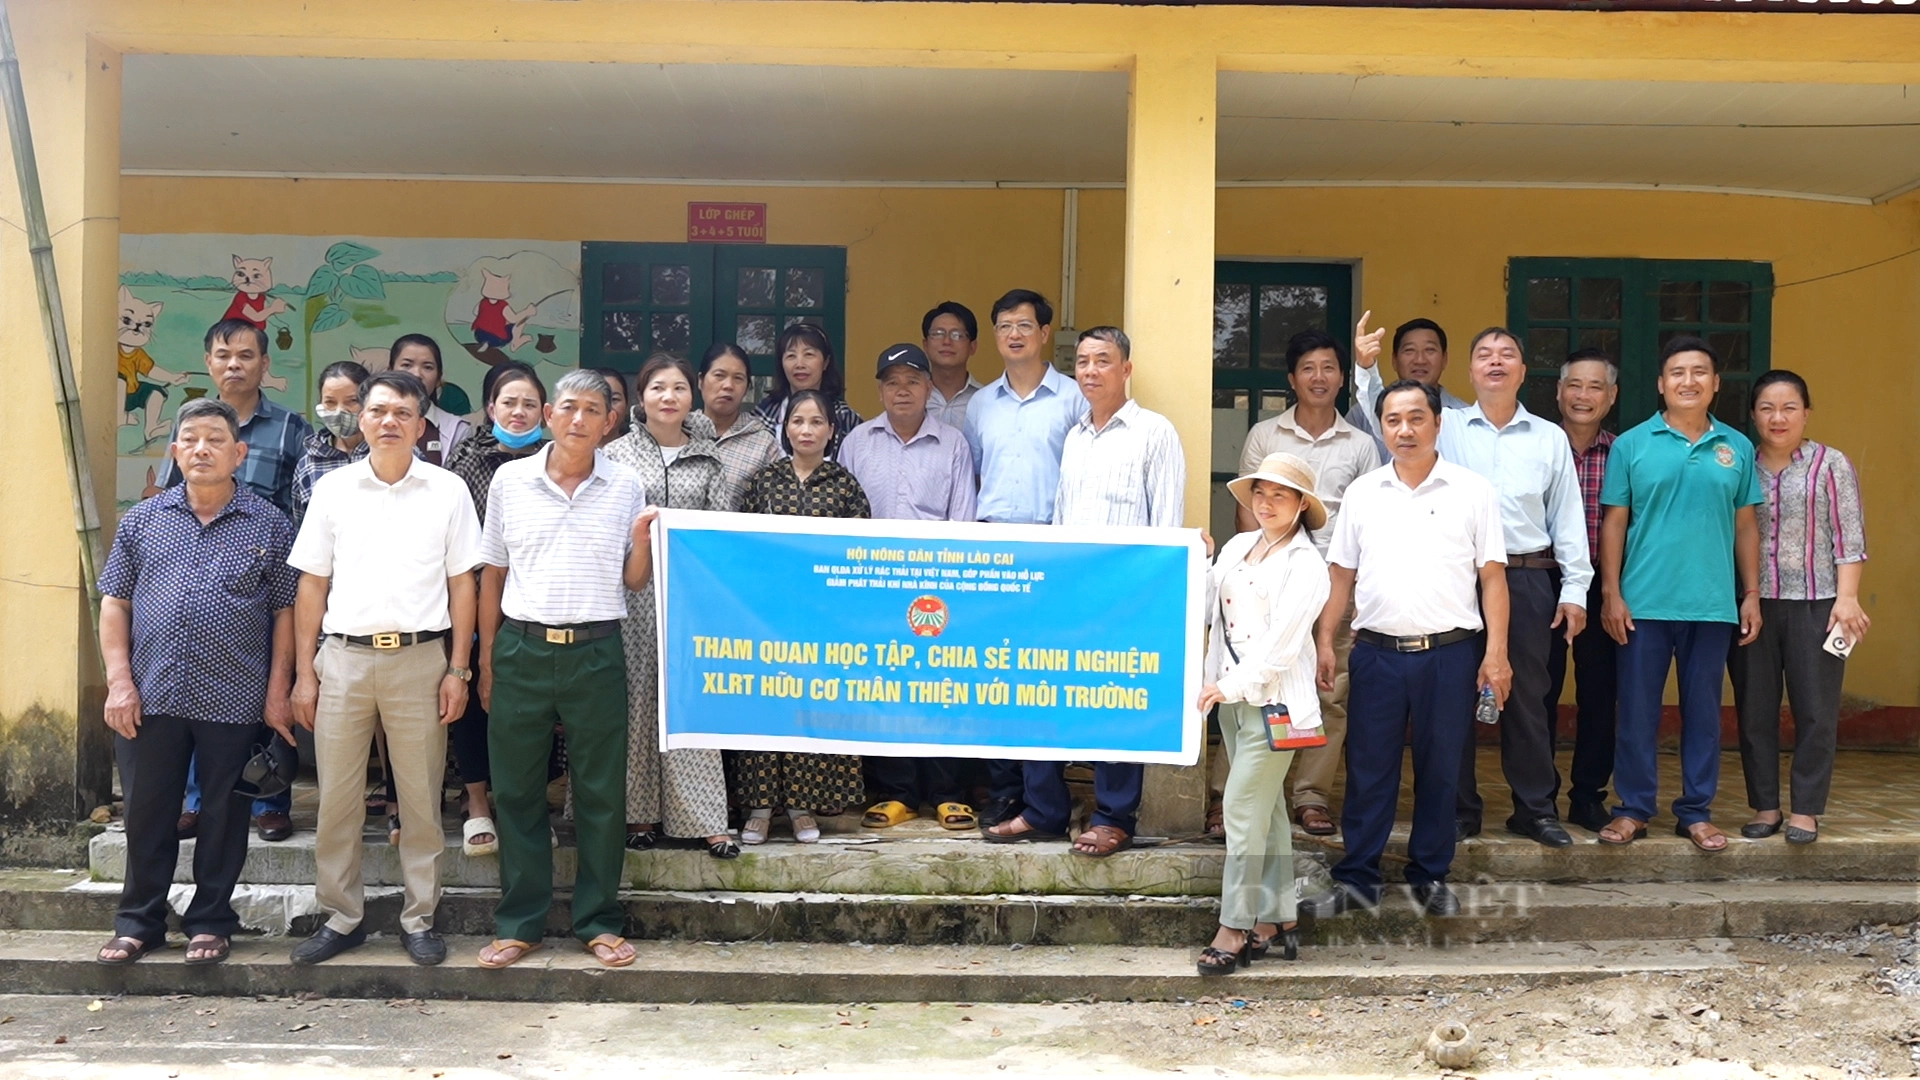 Hội Nông dân tỉnh Lào Cai tọa đàm về các kỹ thuật nuôi sâu canxi, trùn quế tại huyện Bảo Thắng- Ảnh 3.